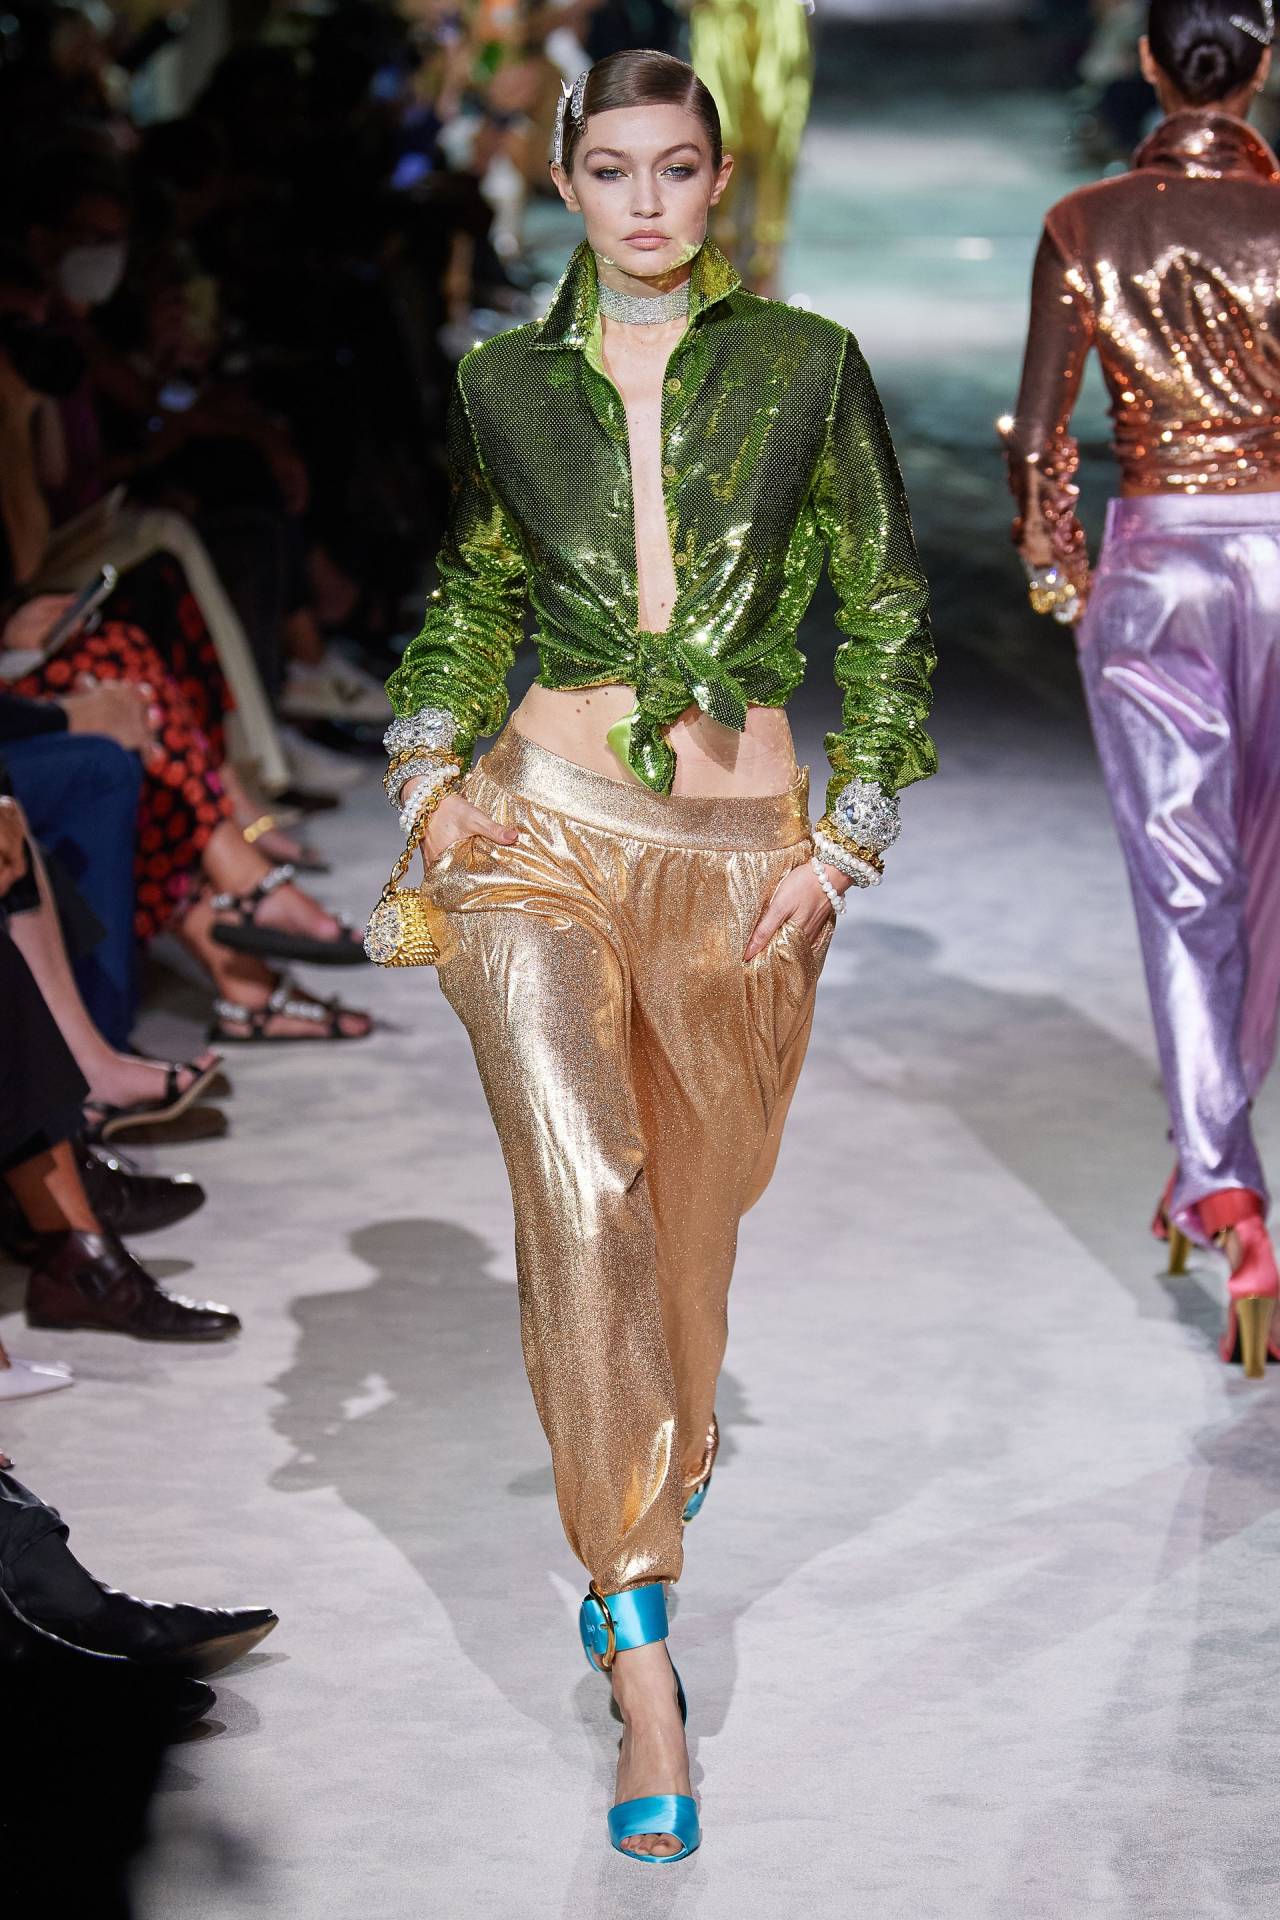 Just a Fashion Blog — Tom Ford Spring 2022 Model: Gigi Hadid